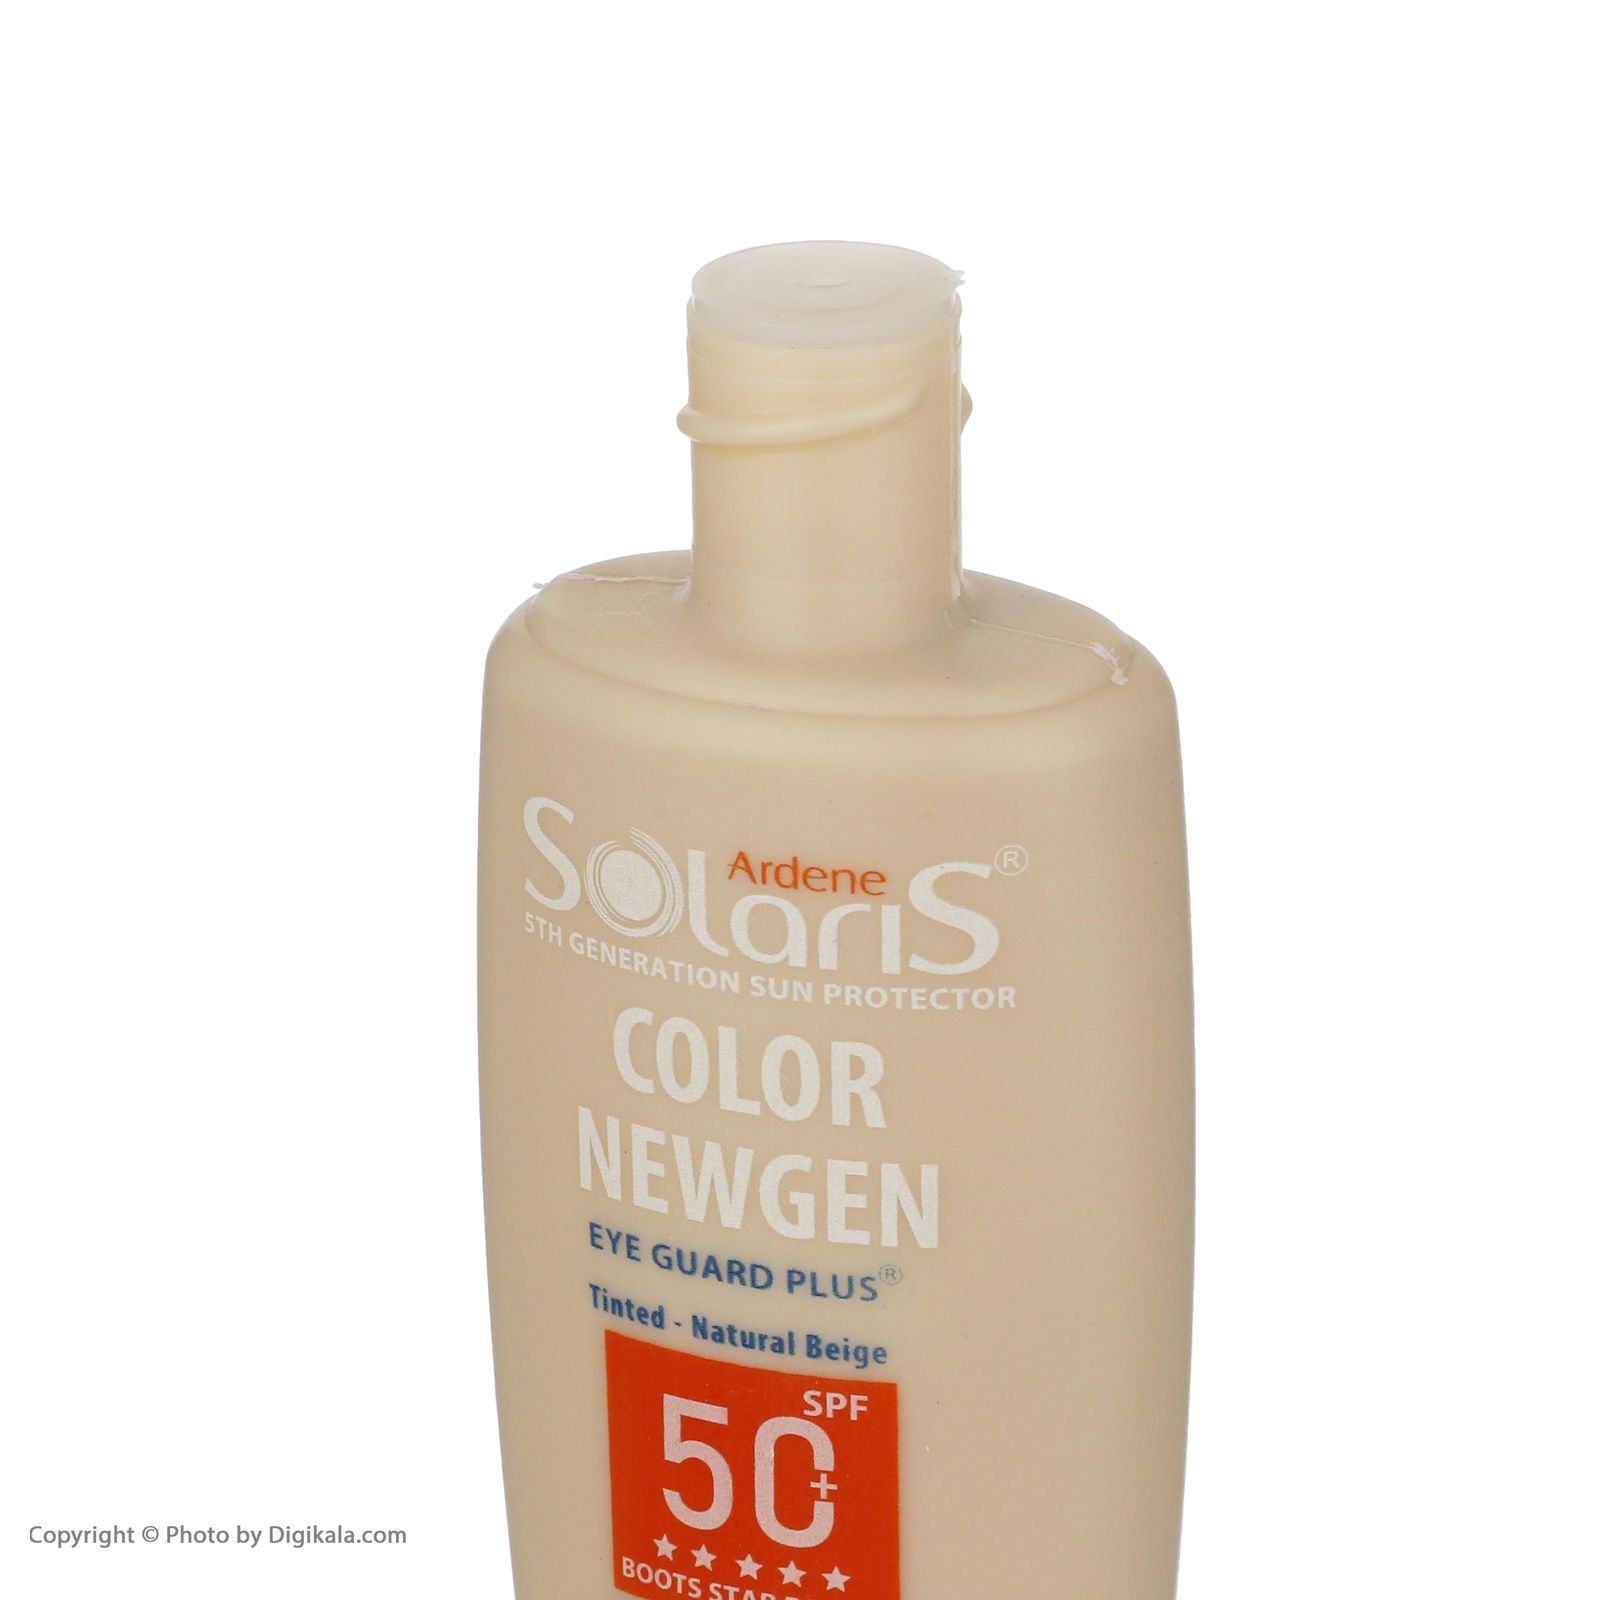 لوسیون ضد آفتاب آردن سولاریس مدل Color Newgen حجم 75 میلی لیتر -  - 5